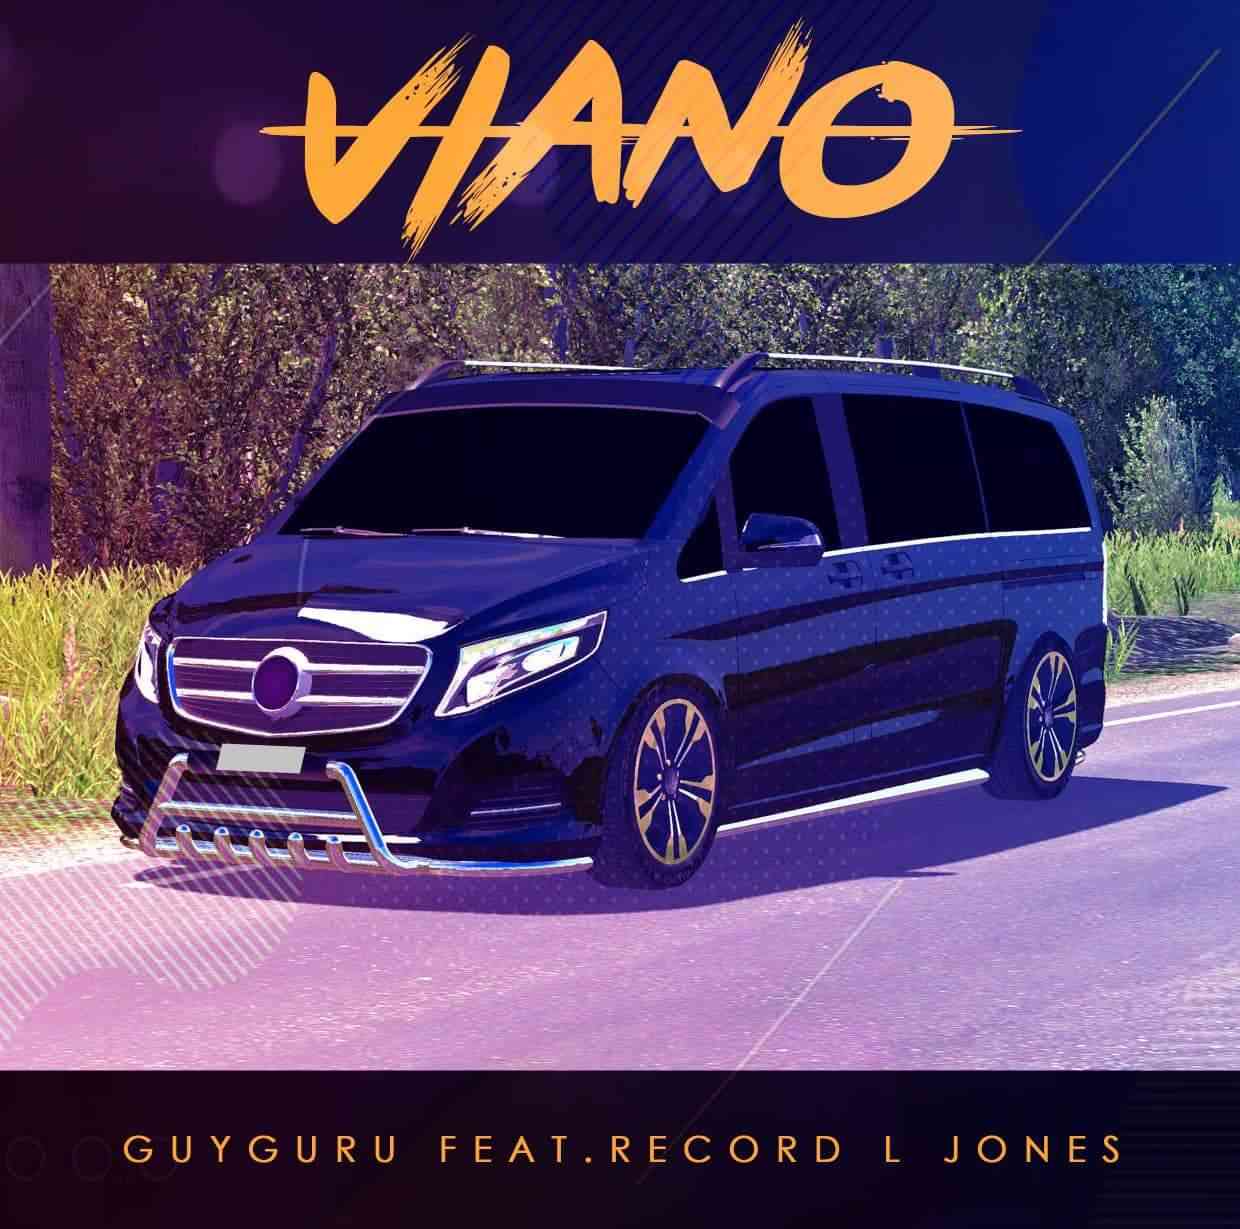 Record L Jones & Guyguru - Viano